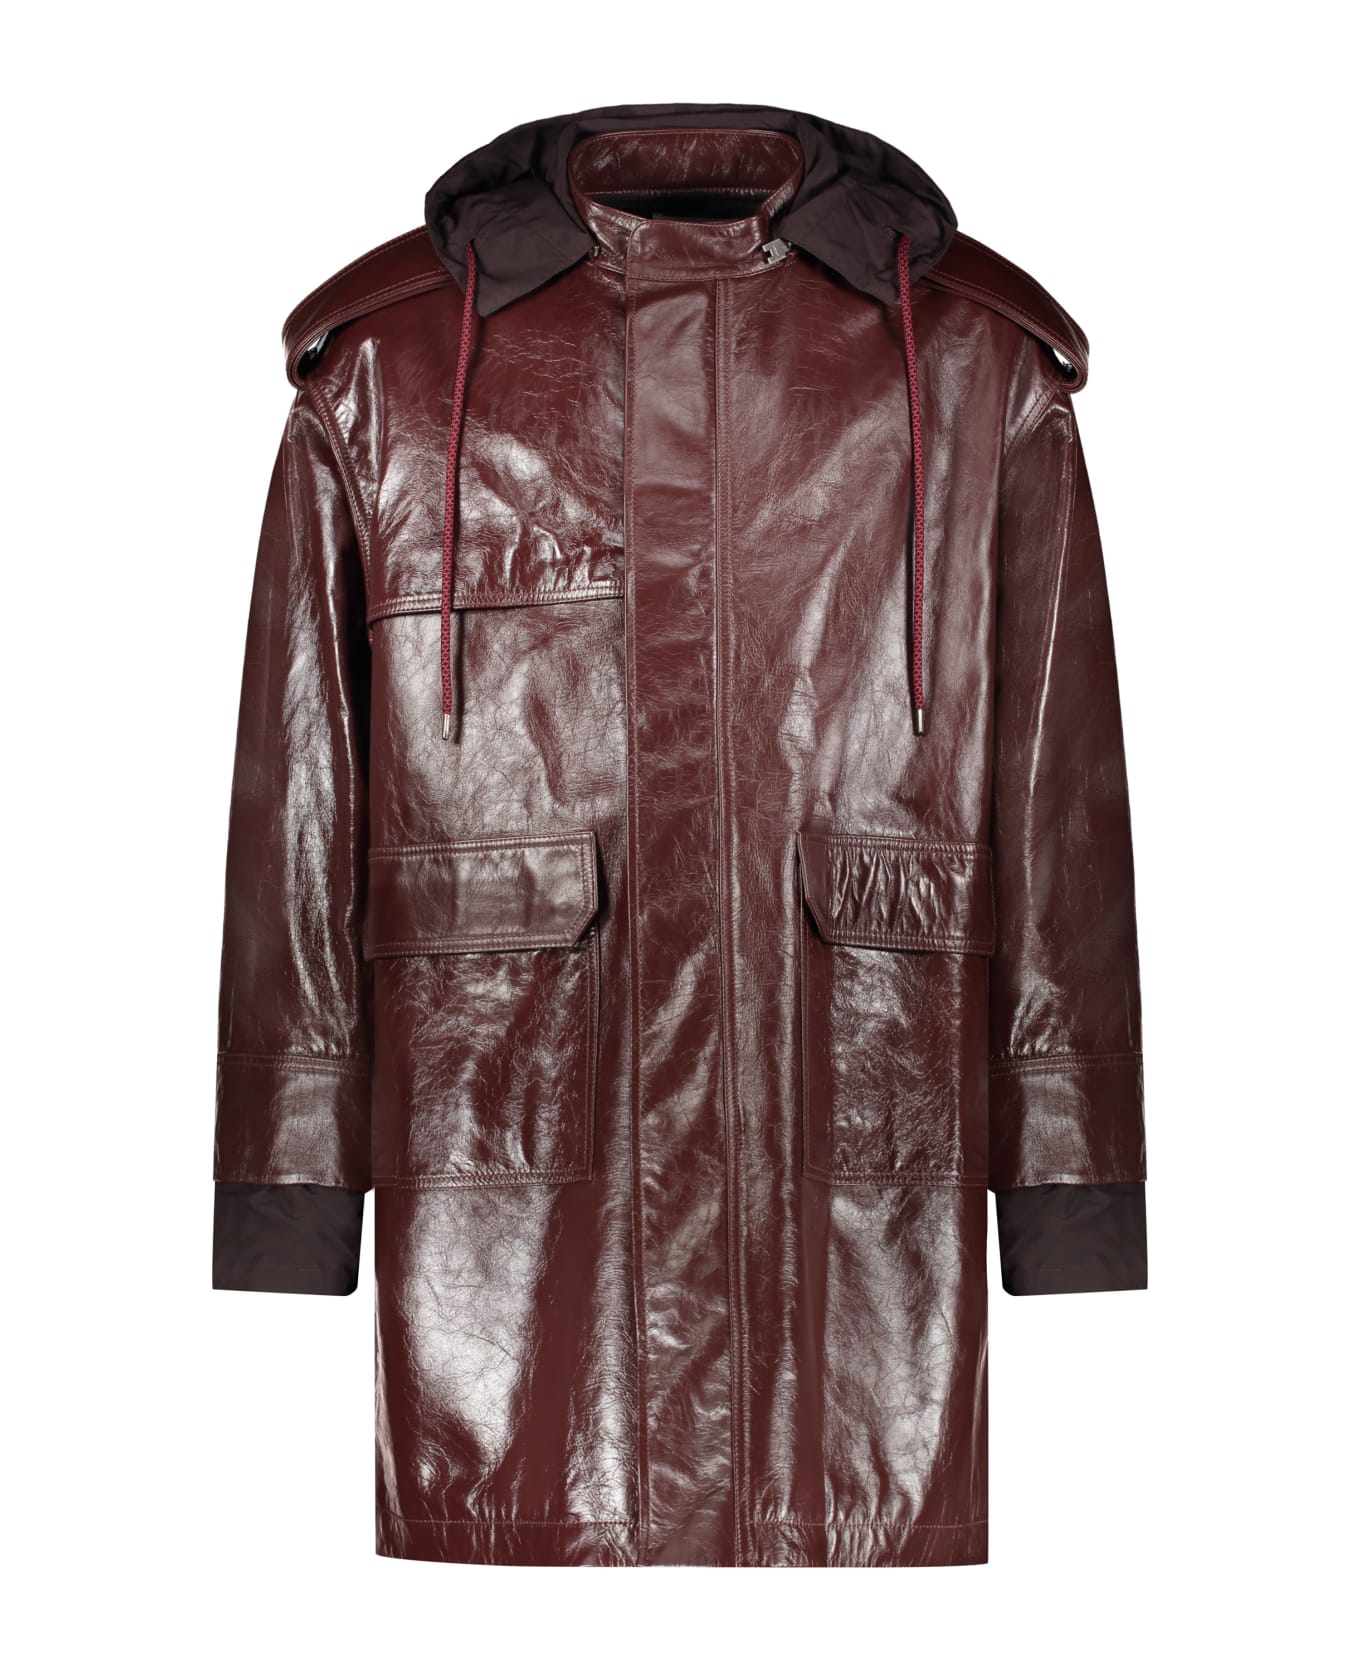 AMBUSH Hooded Leather Jacket - Burgundy